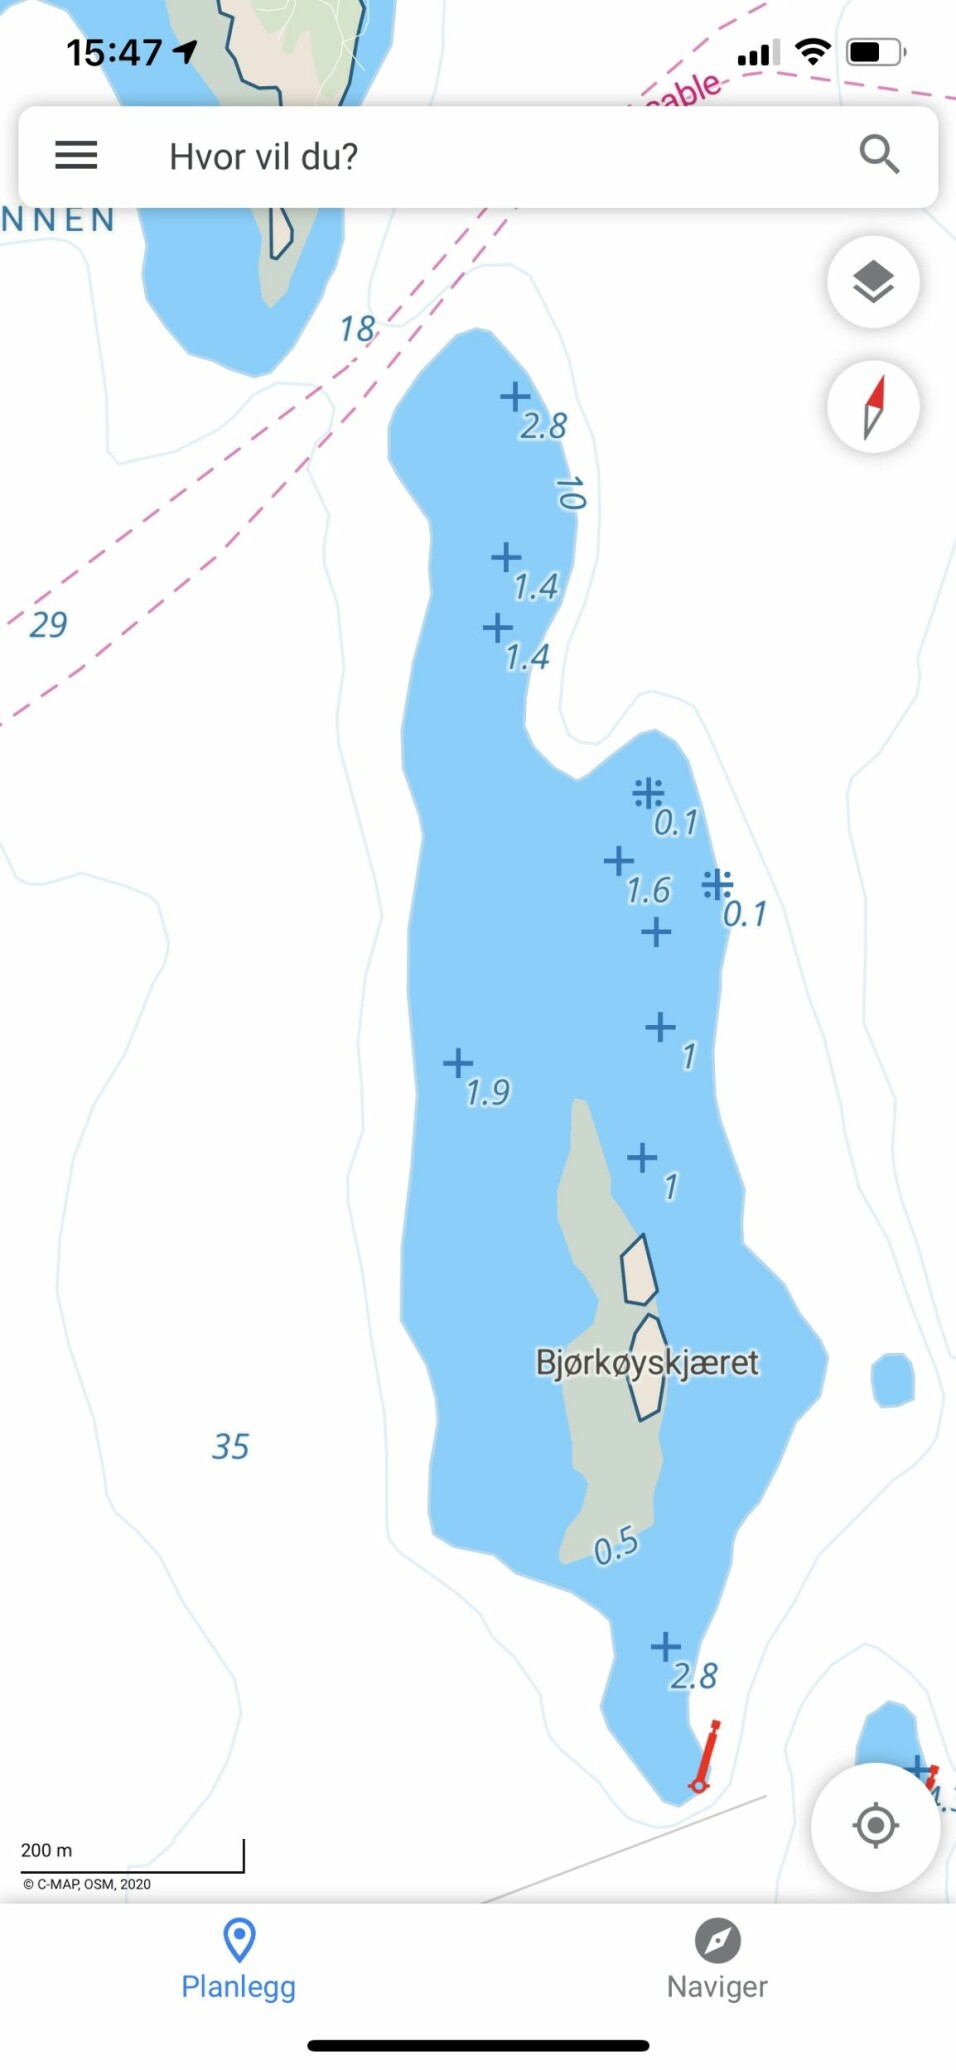 C-Map